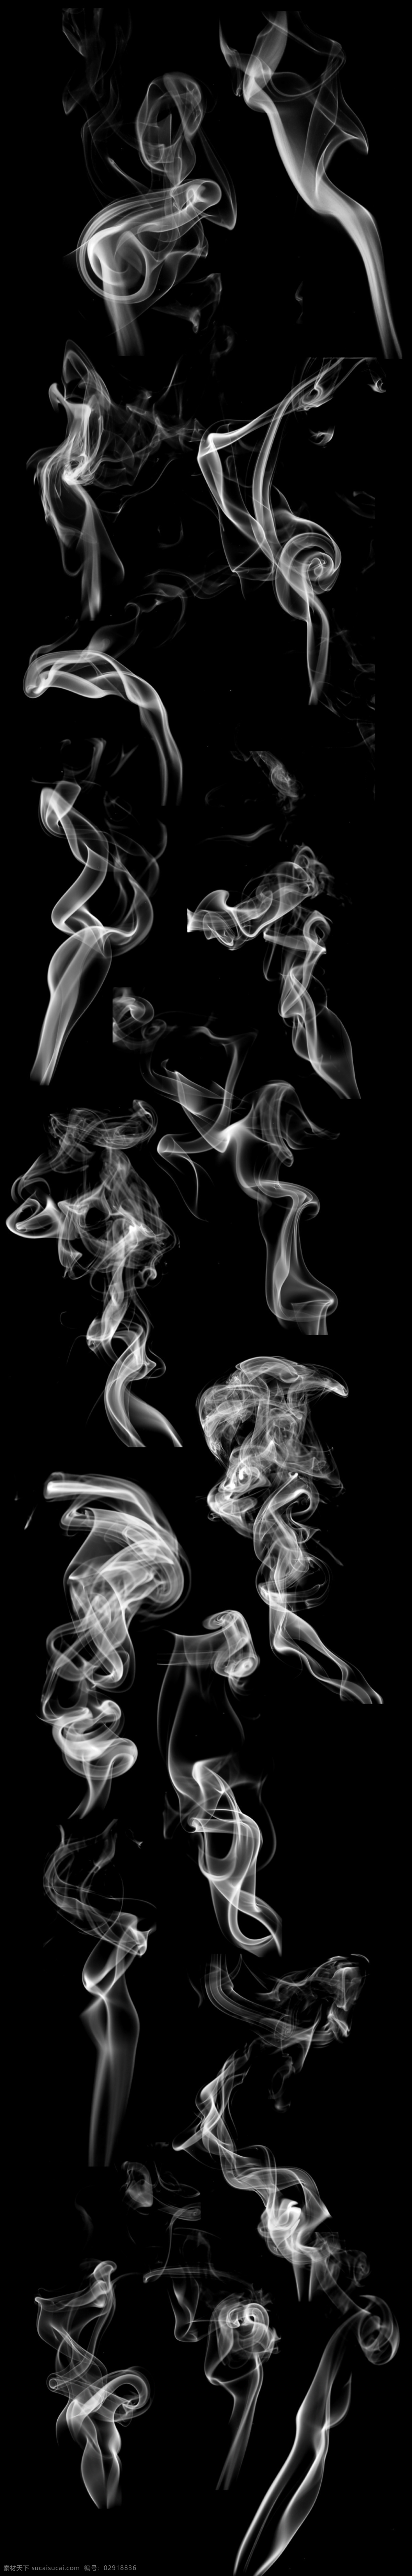 烟雾可变色 烟雾 丝绸 可变色 黑色